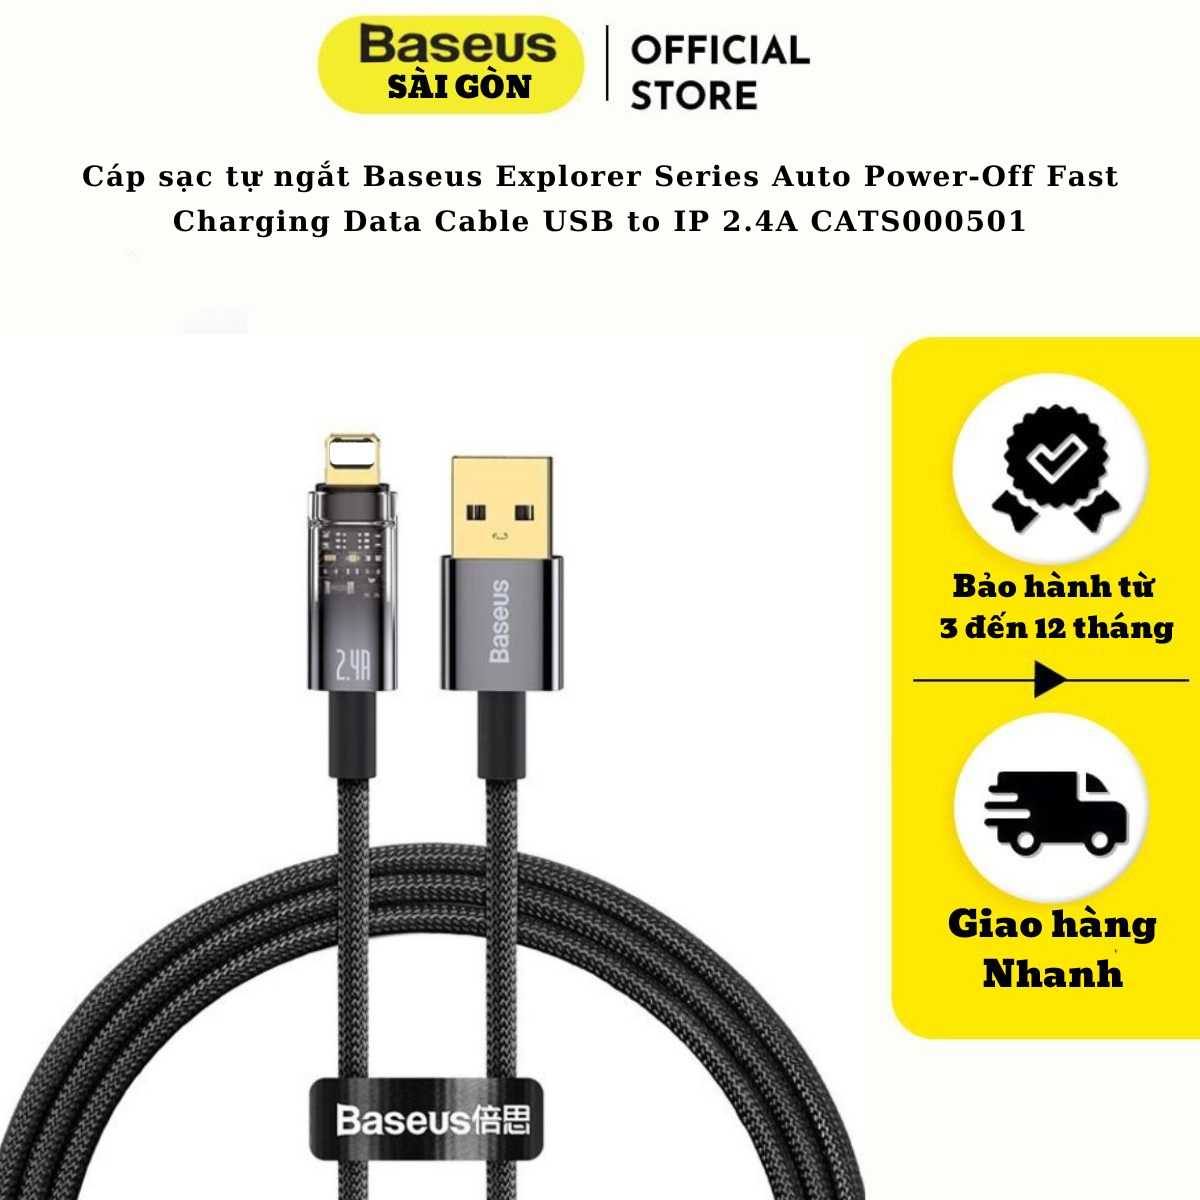 Cáp sạc tự ngắt Baseus Explorer Series Auto Power-Off Fast Charging Data Cable USB to IP 2.4A sạc nhanh, truyền dữ liệu 480 Mbps cho I-phone CATS000501- Hàng chính hãng